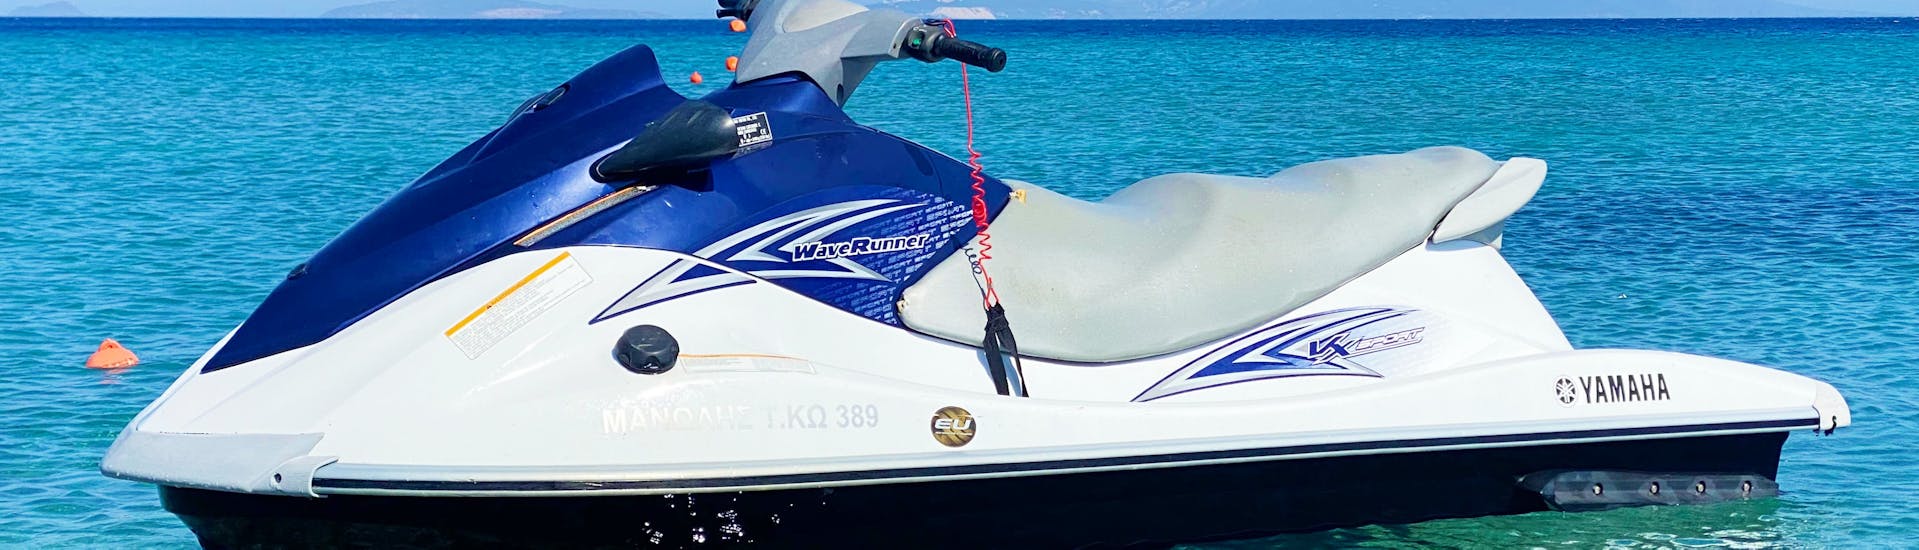 Vista sulla moto d'acqua a Kefalos Beach sull'isola di Kos con il Water Club Poseidon Kos.